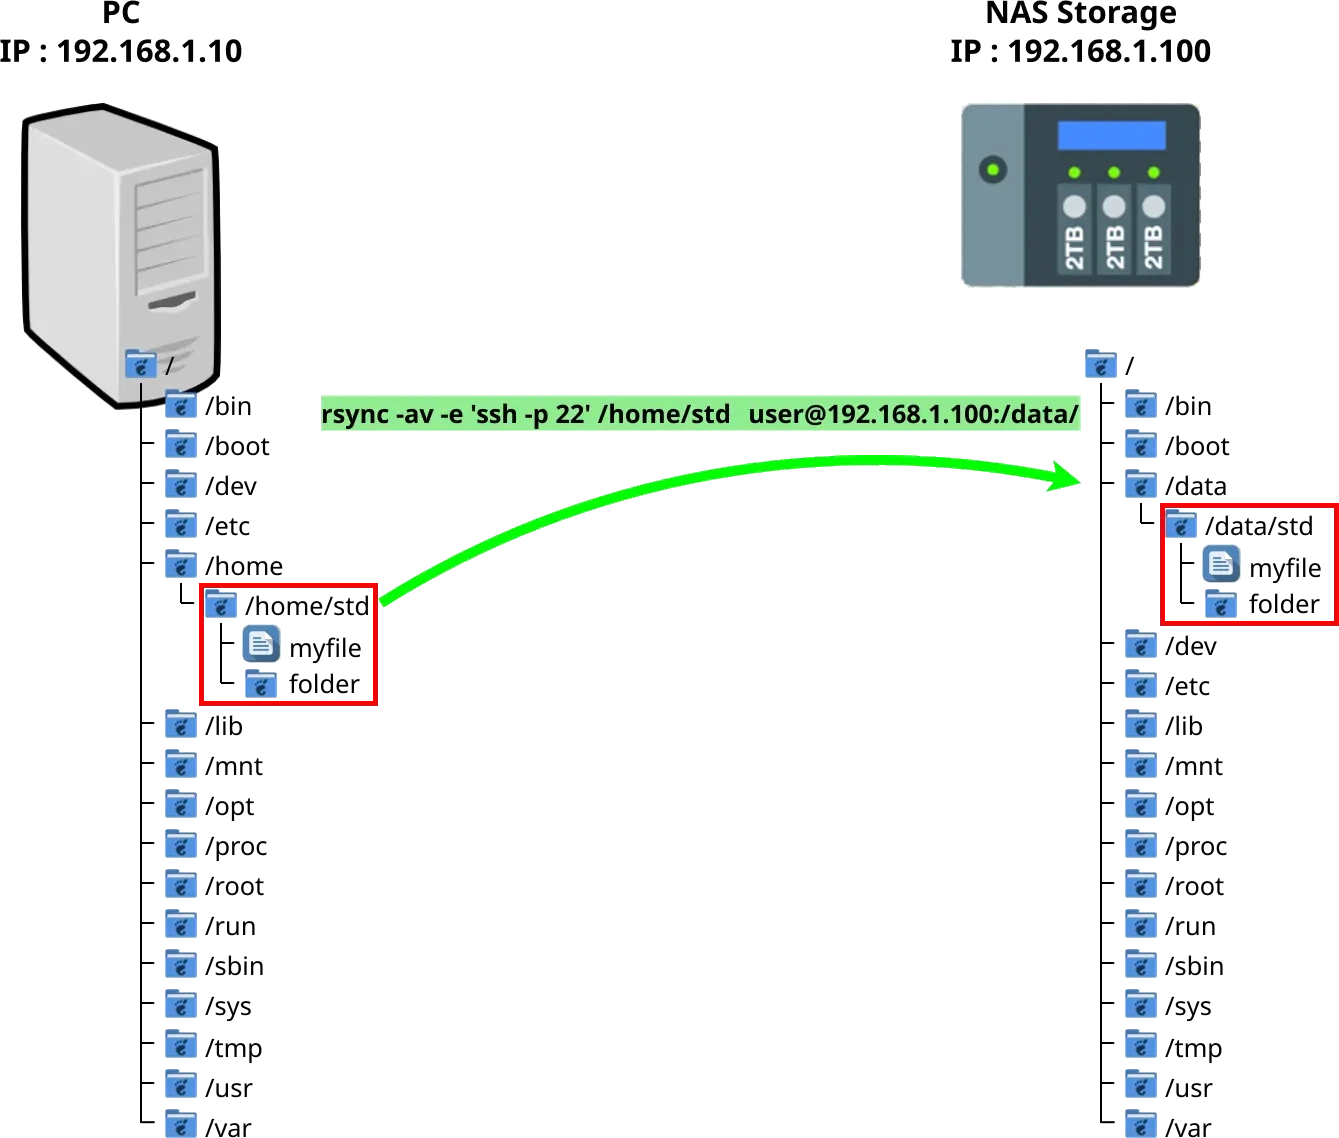 une représentation graphique de la structure des dossiers Linux de deux machines avec la copie rsync entre elles d'un dossier